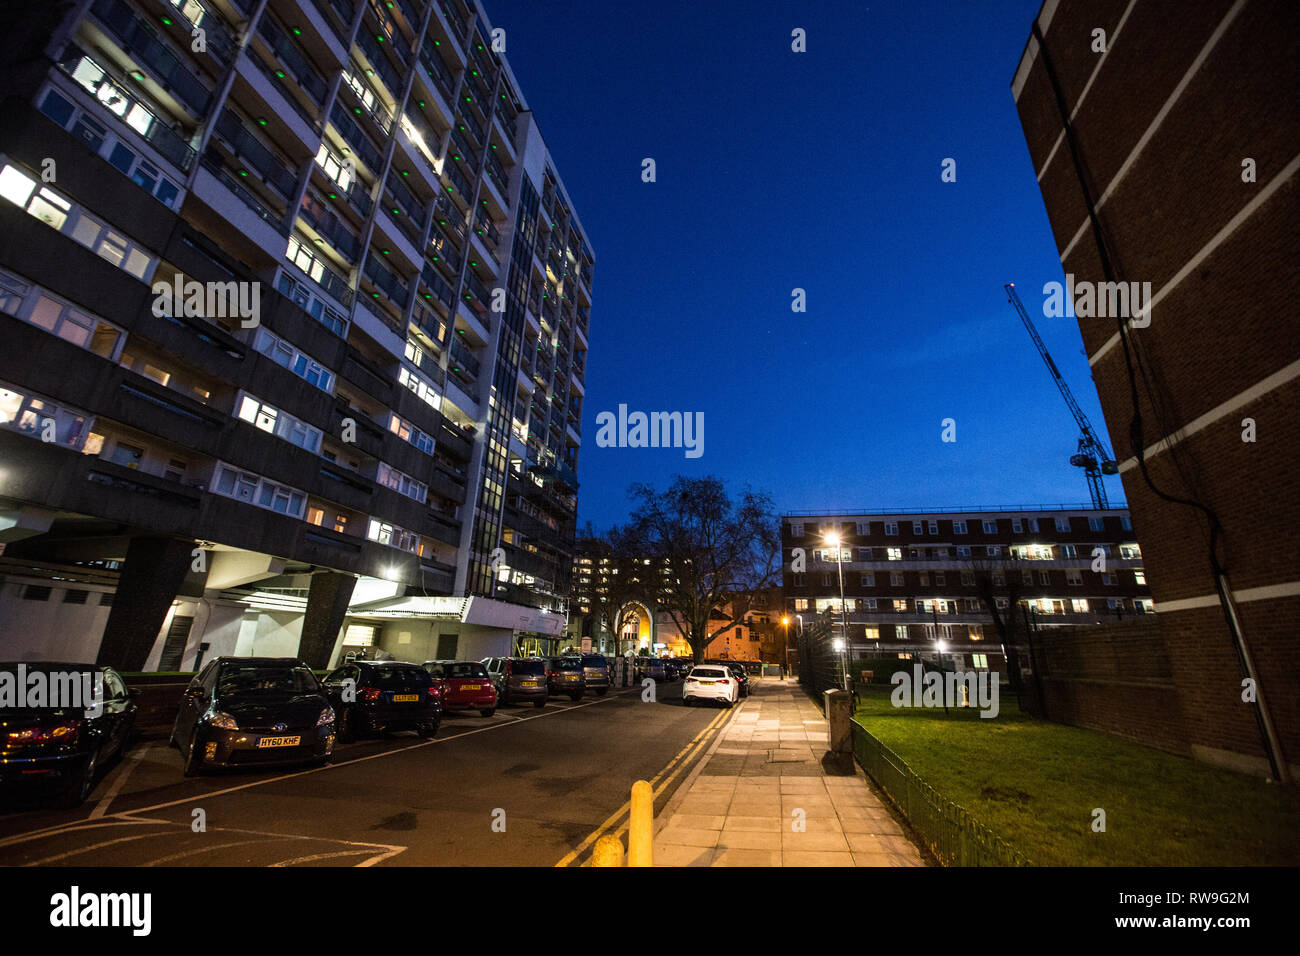 Blocs de logements sociaux, au crépuscule, les Fellows, Weymouth Cour Terrasse, Hoxton, East London, Angleterre, Royaume-Uni. Banque D'Images